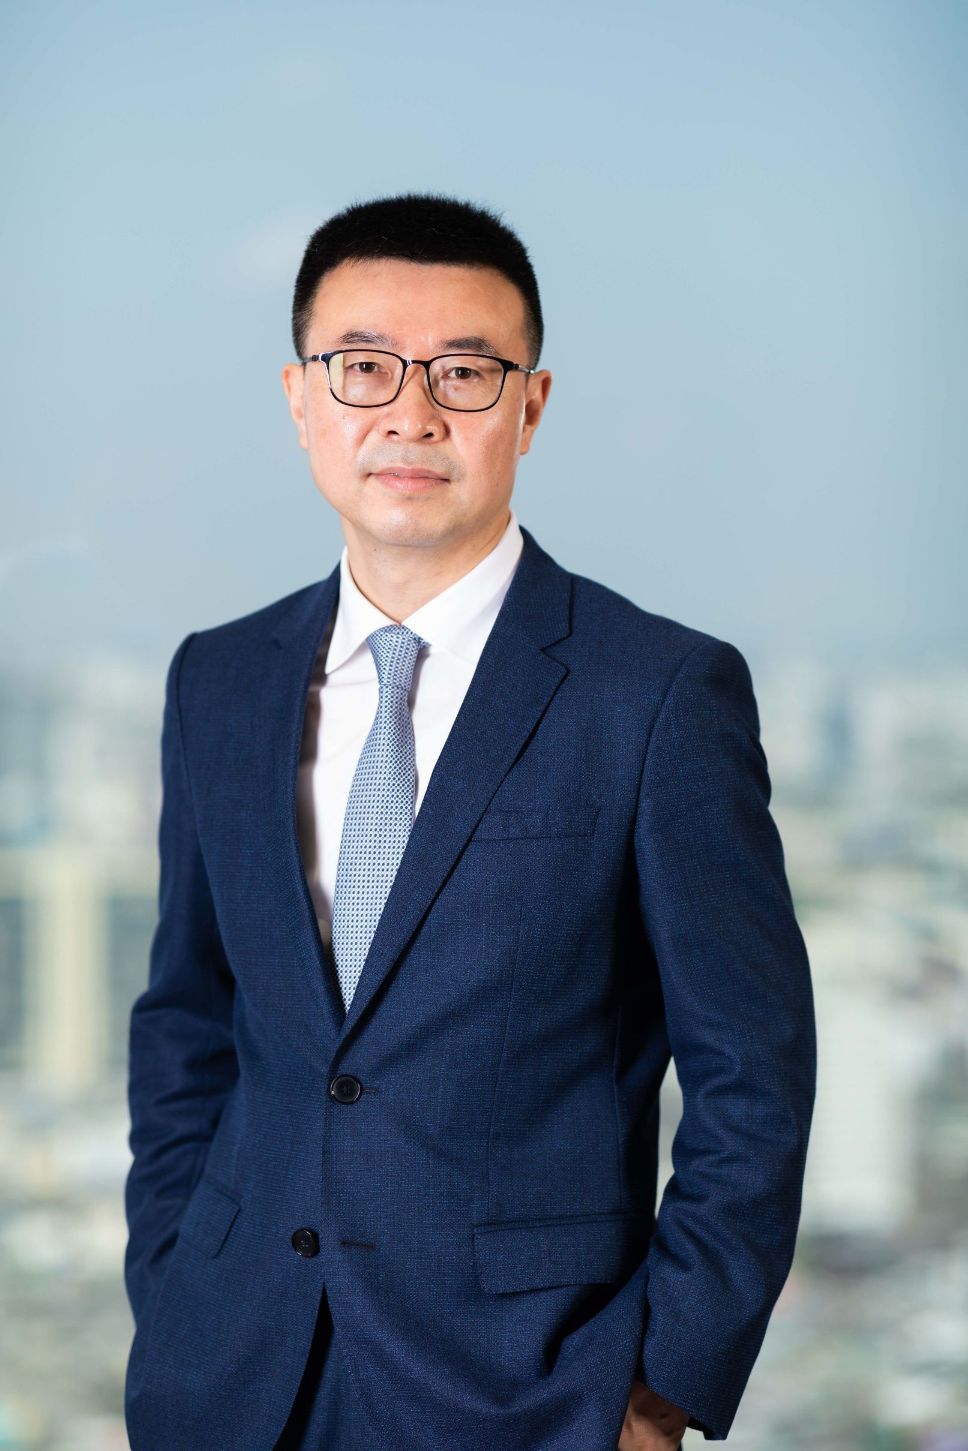 Simon Lin Chủ tịch Huawei APAC 1 Huawei nỗ lực cùng châu Á   Thái Bình Dương chuyển đổi số bền vững